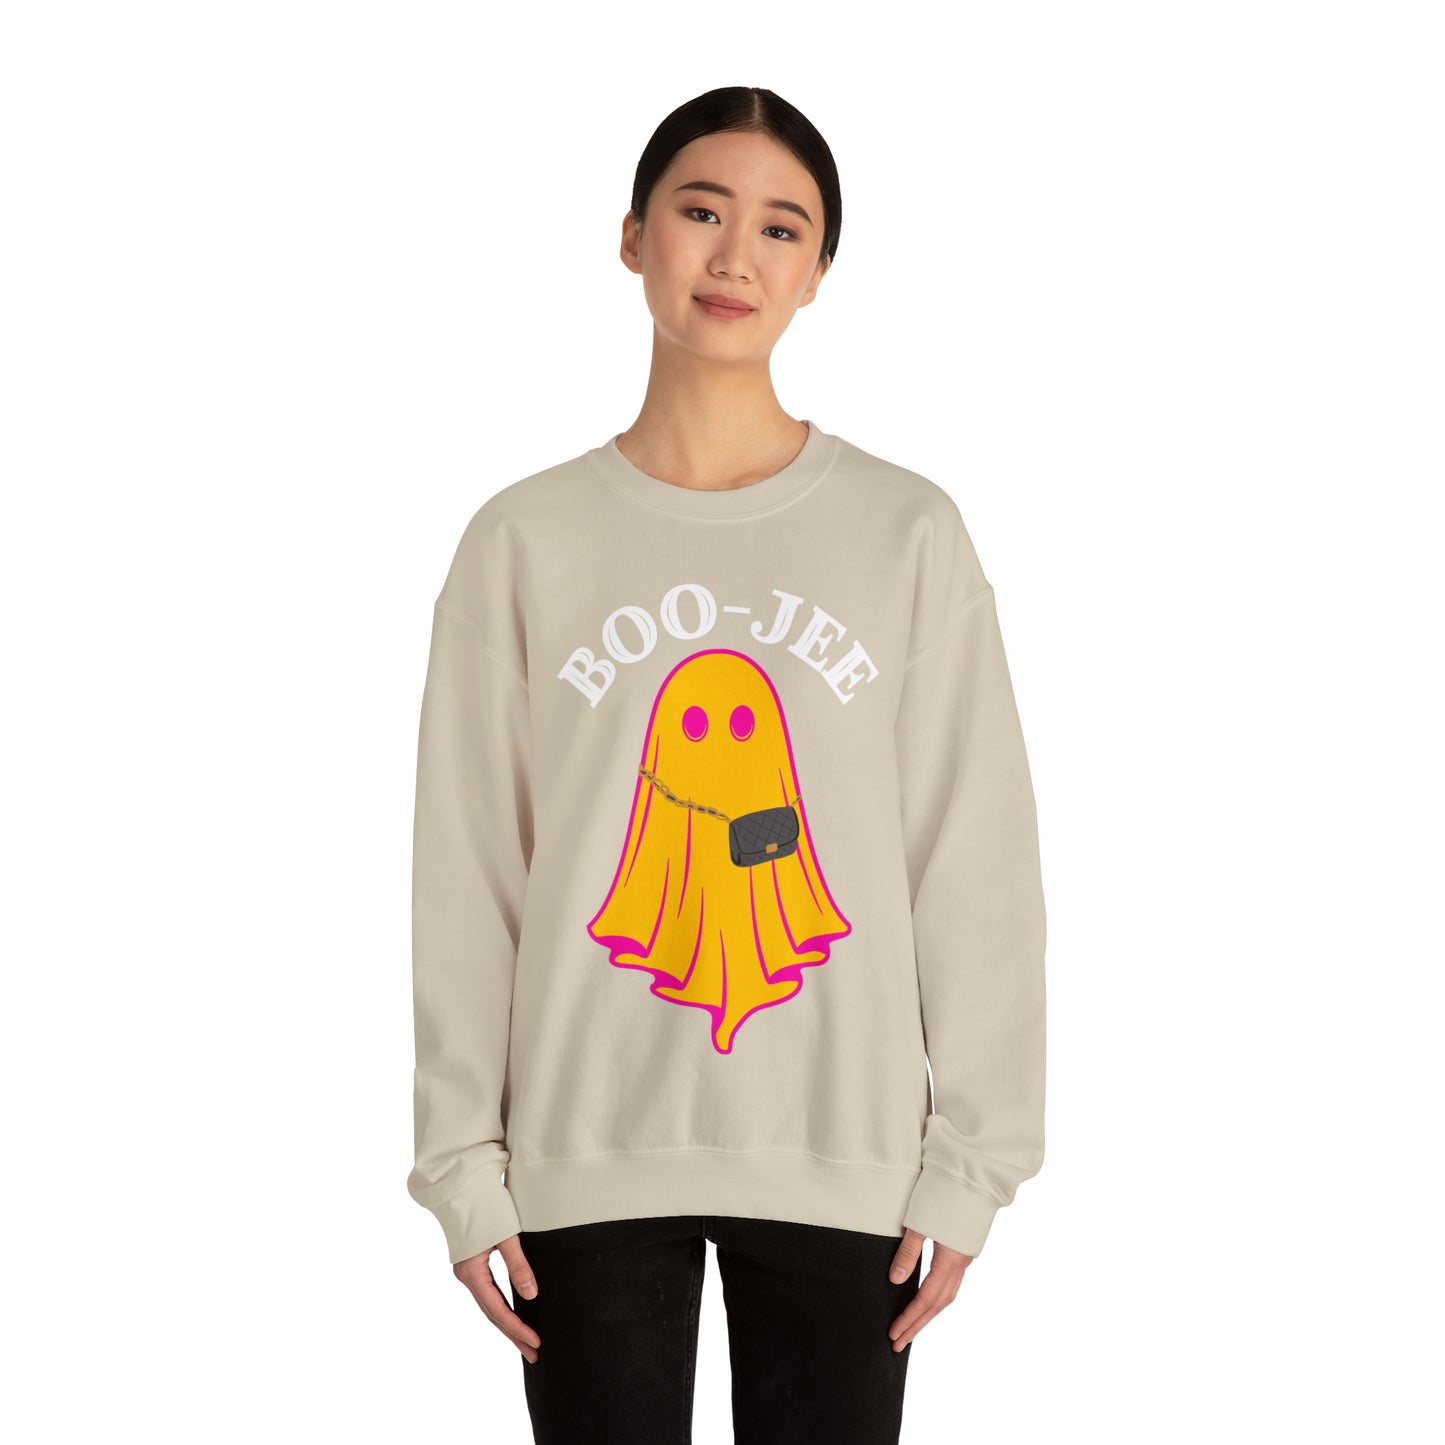 Boo-Jee Sweatshirt, Boo Halloween Sweatshirt, Spooky Ghost Sweatshirt, Boo Jee Shirt, Halloween Ghost Sweatshirt, Halloween Boo Shirt